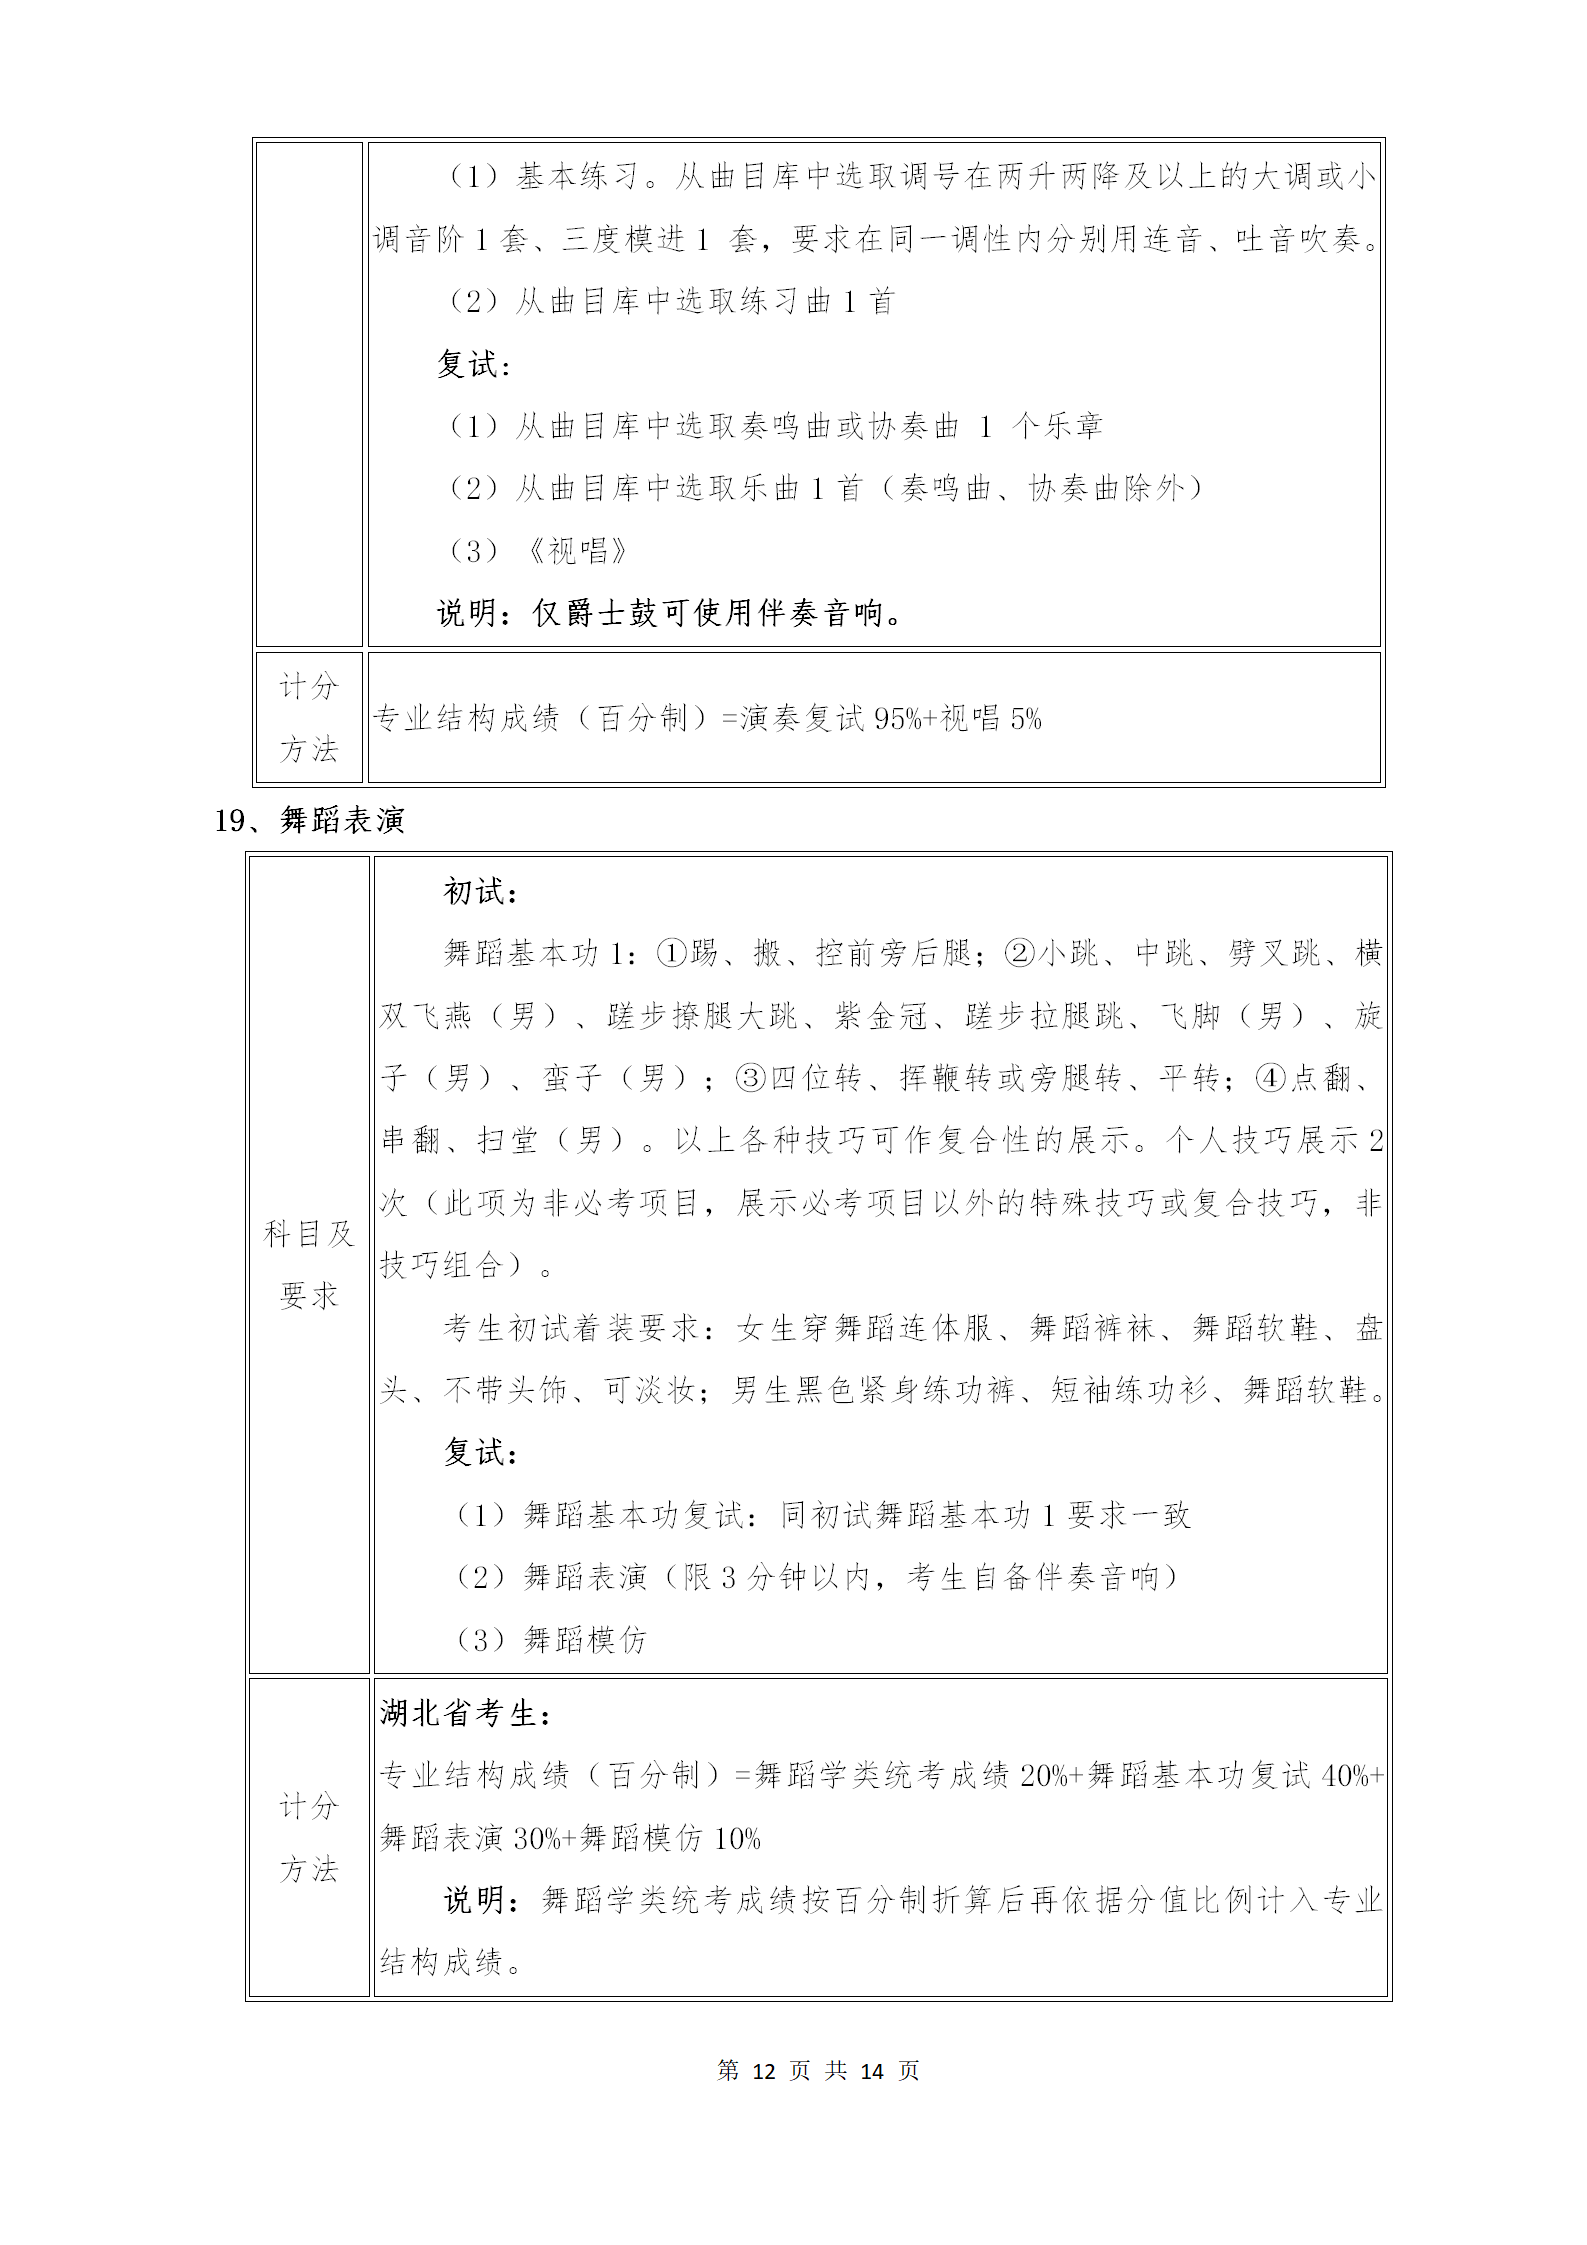 附件1：武汉音乐学院2021年普通本科招生专业考试内容和计分方法（调整版）_12.png